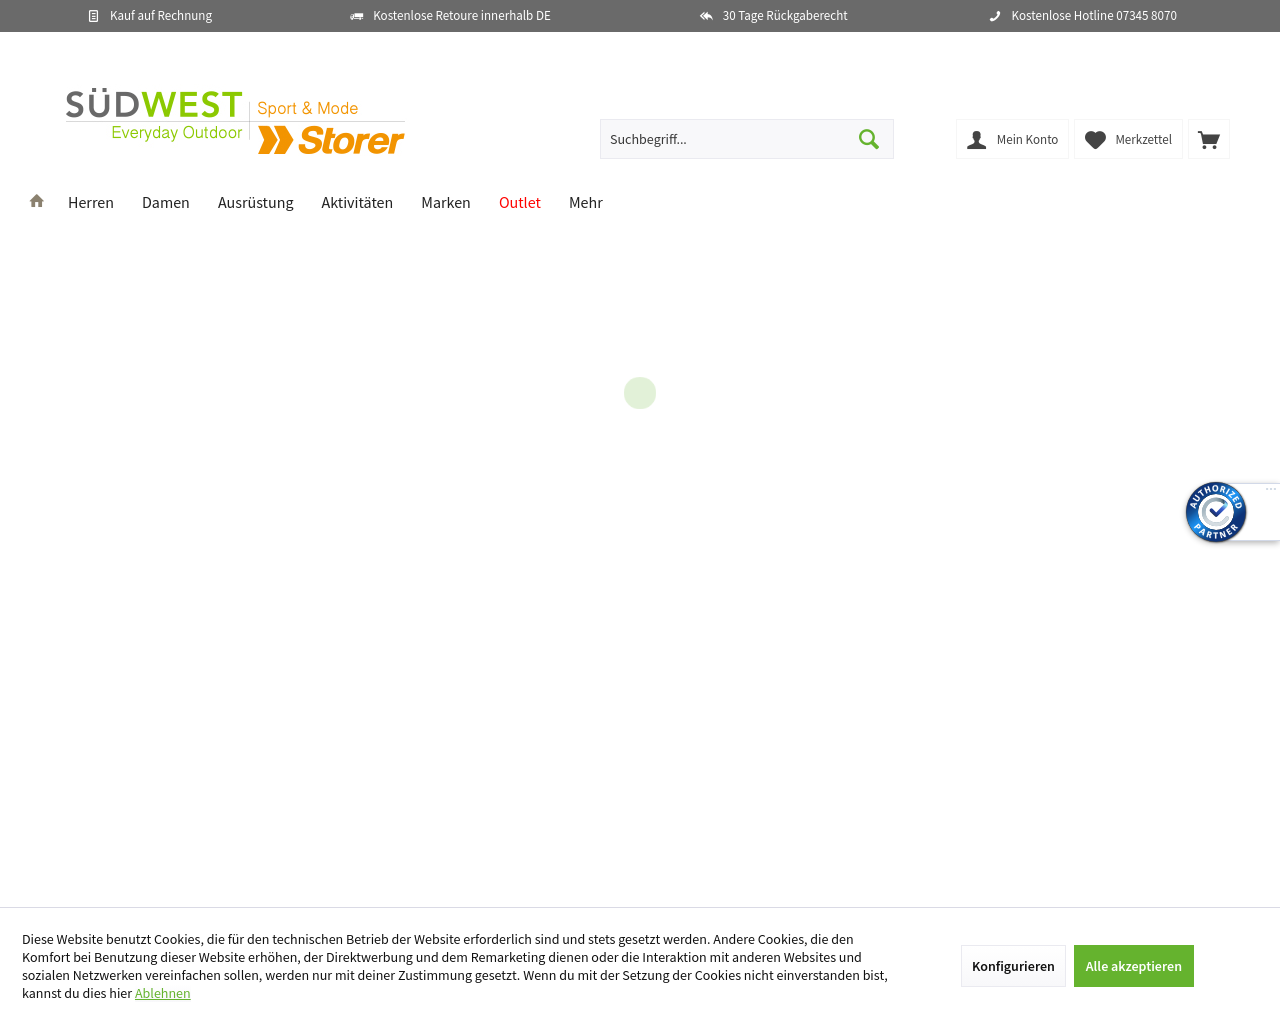 sued-west.com